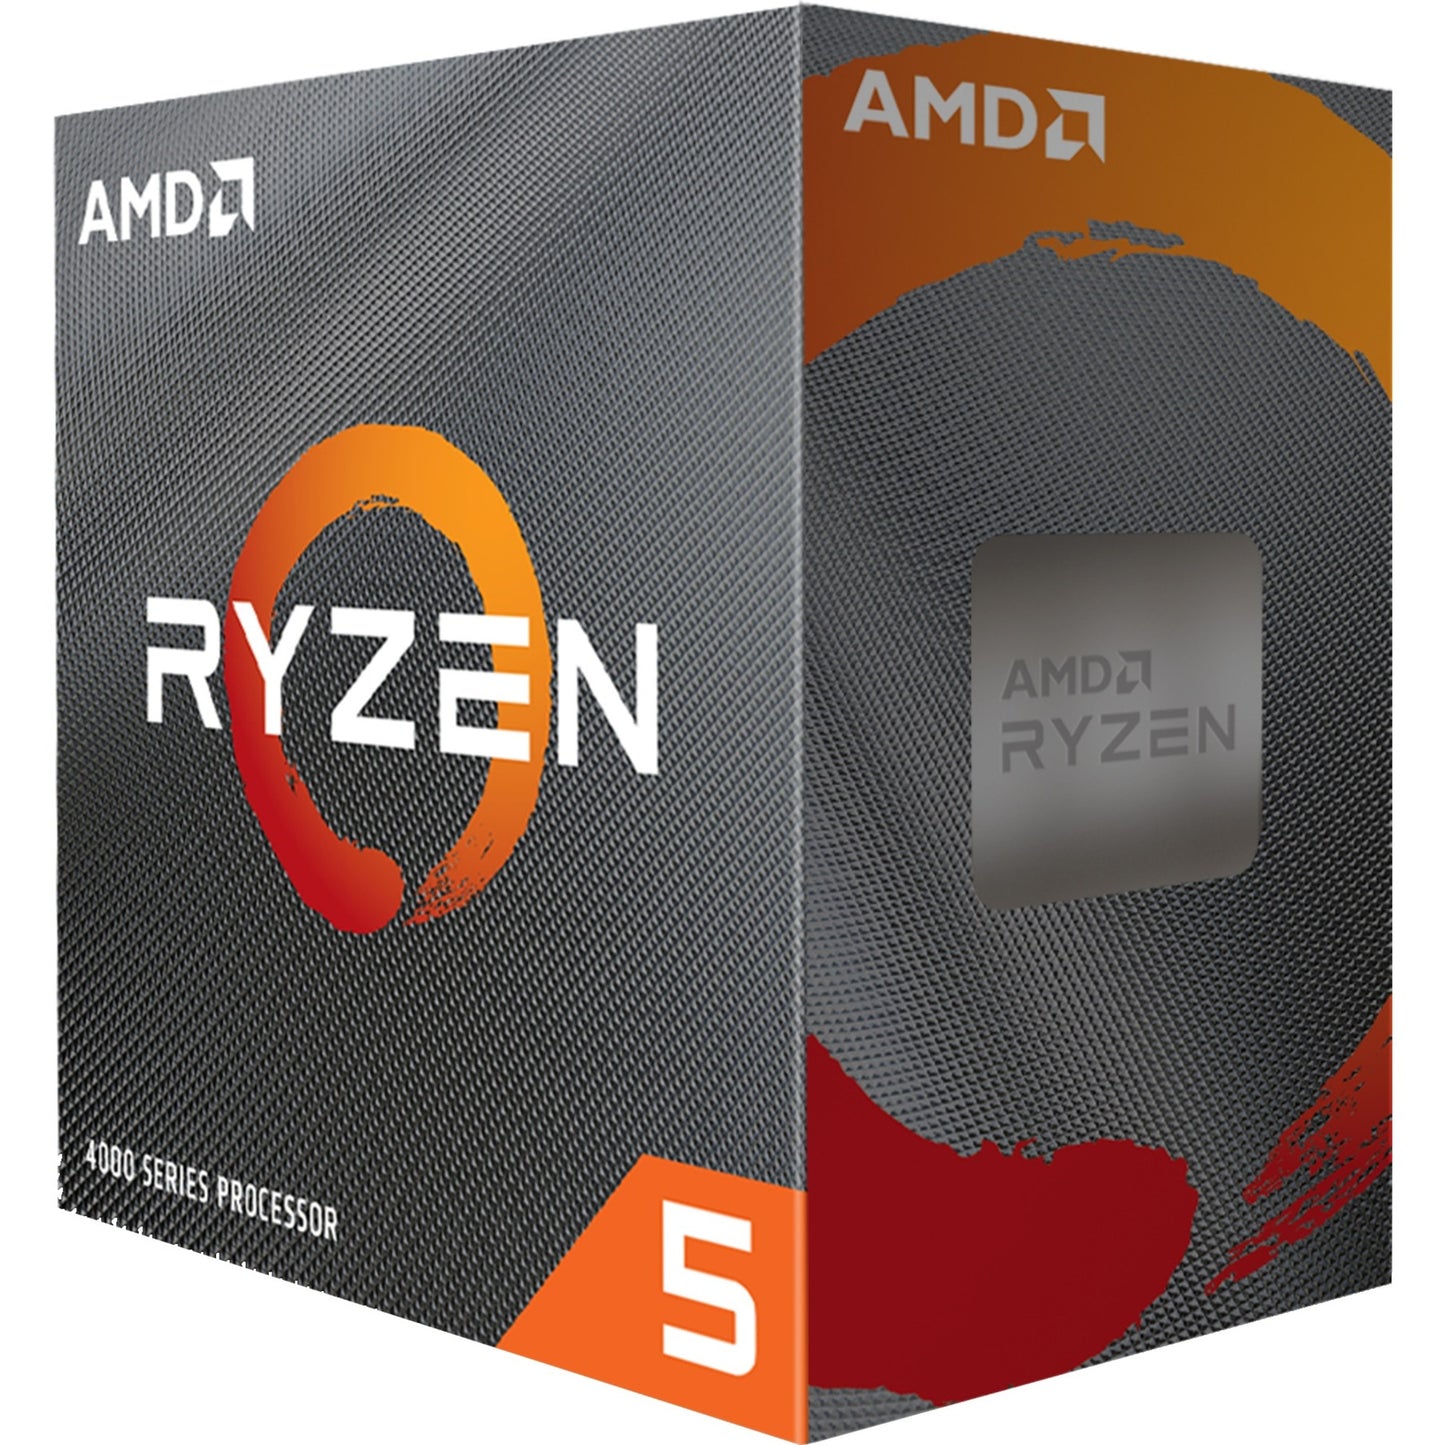 AMD Ryzen 5 4500, 3.6 GHz (4.1 GHz Turbo Boost)